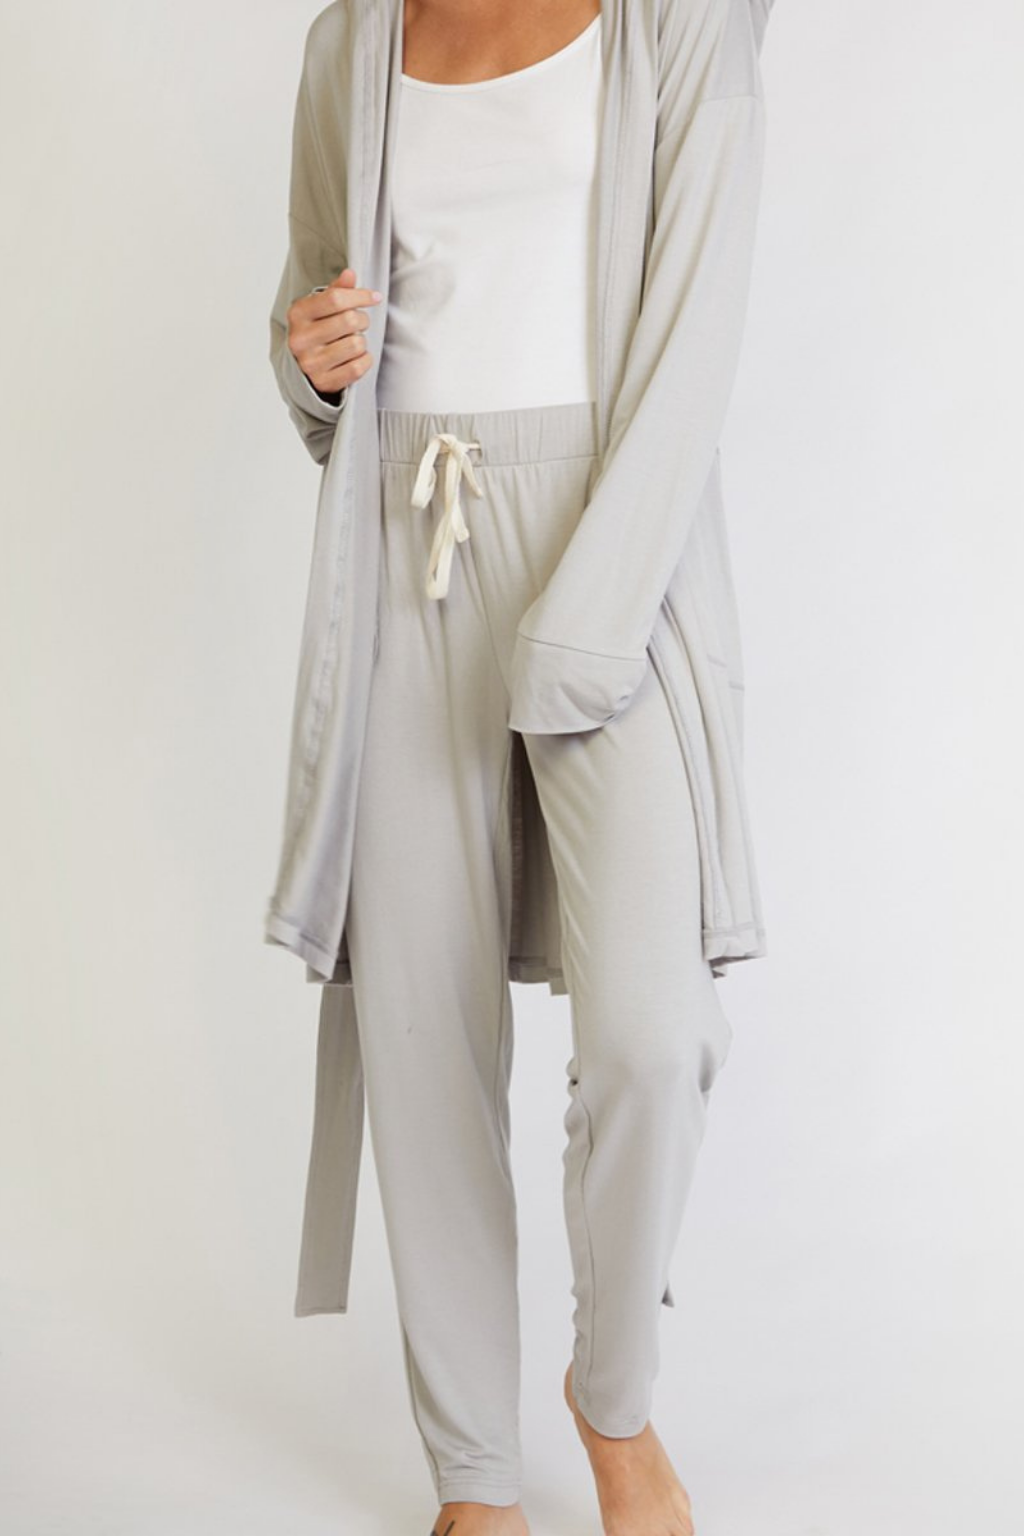 Hooded Jersey Robe & Pants Loungewear